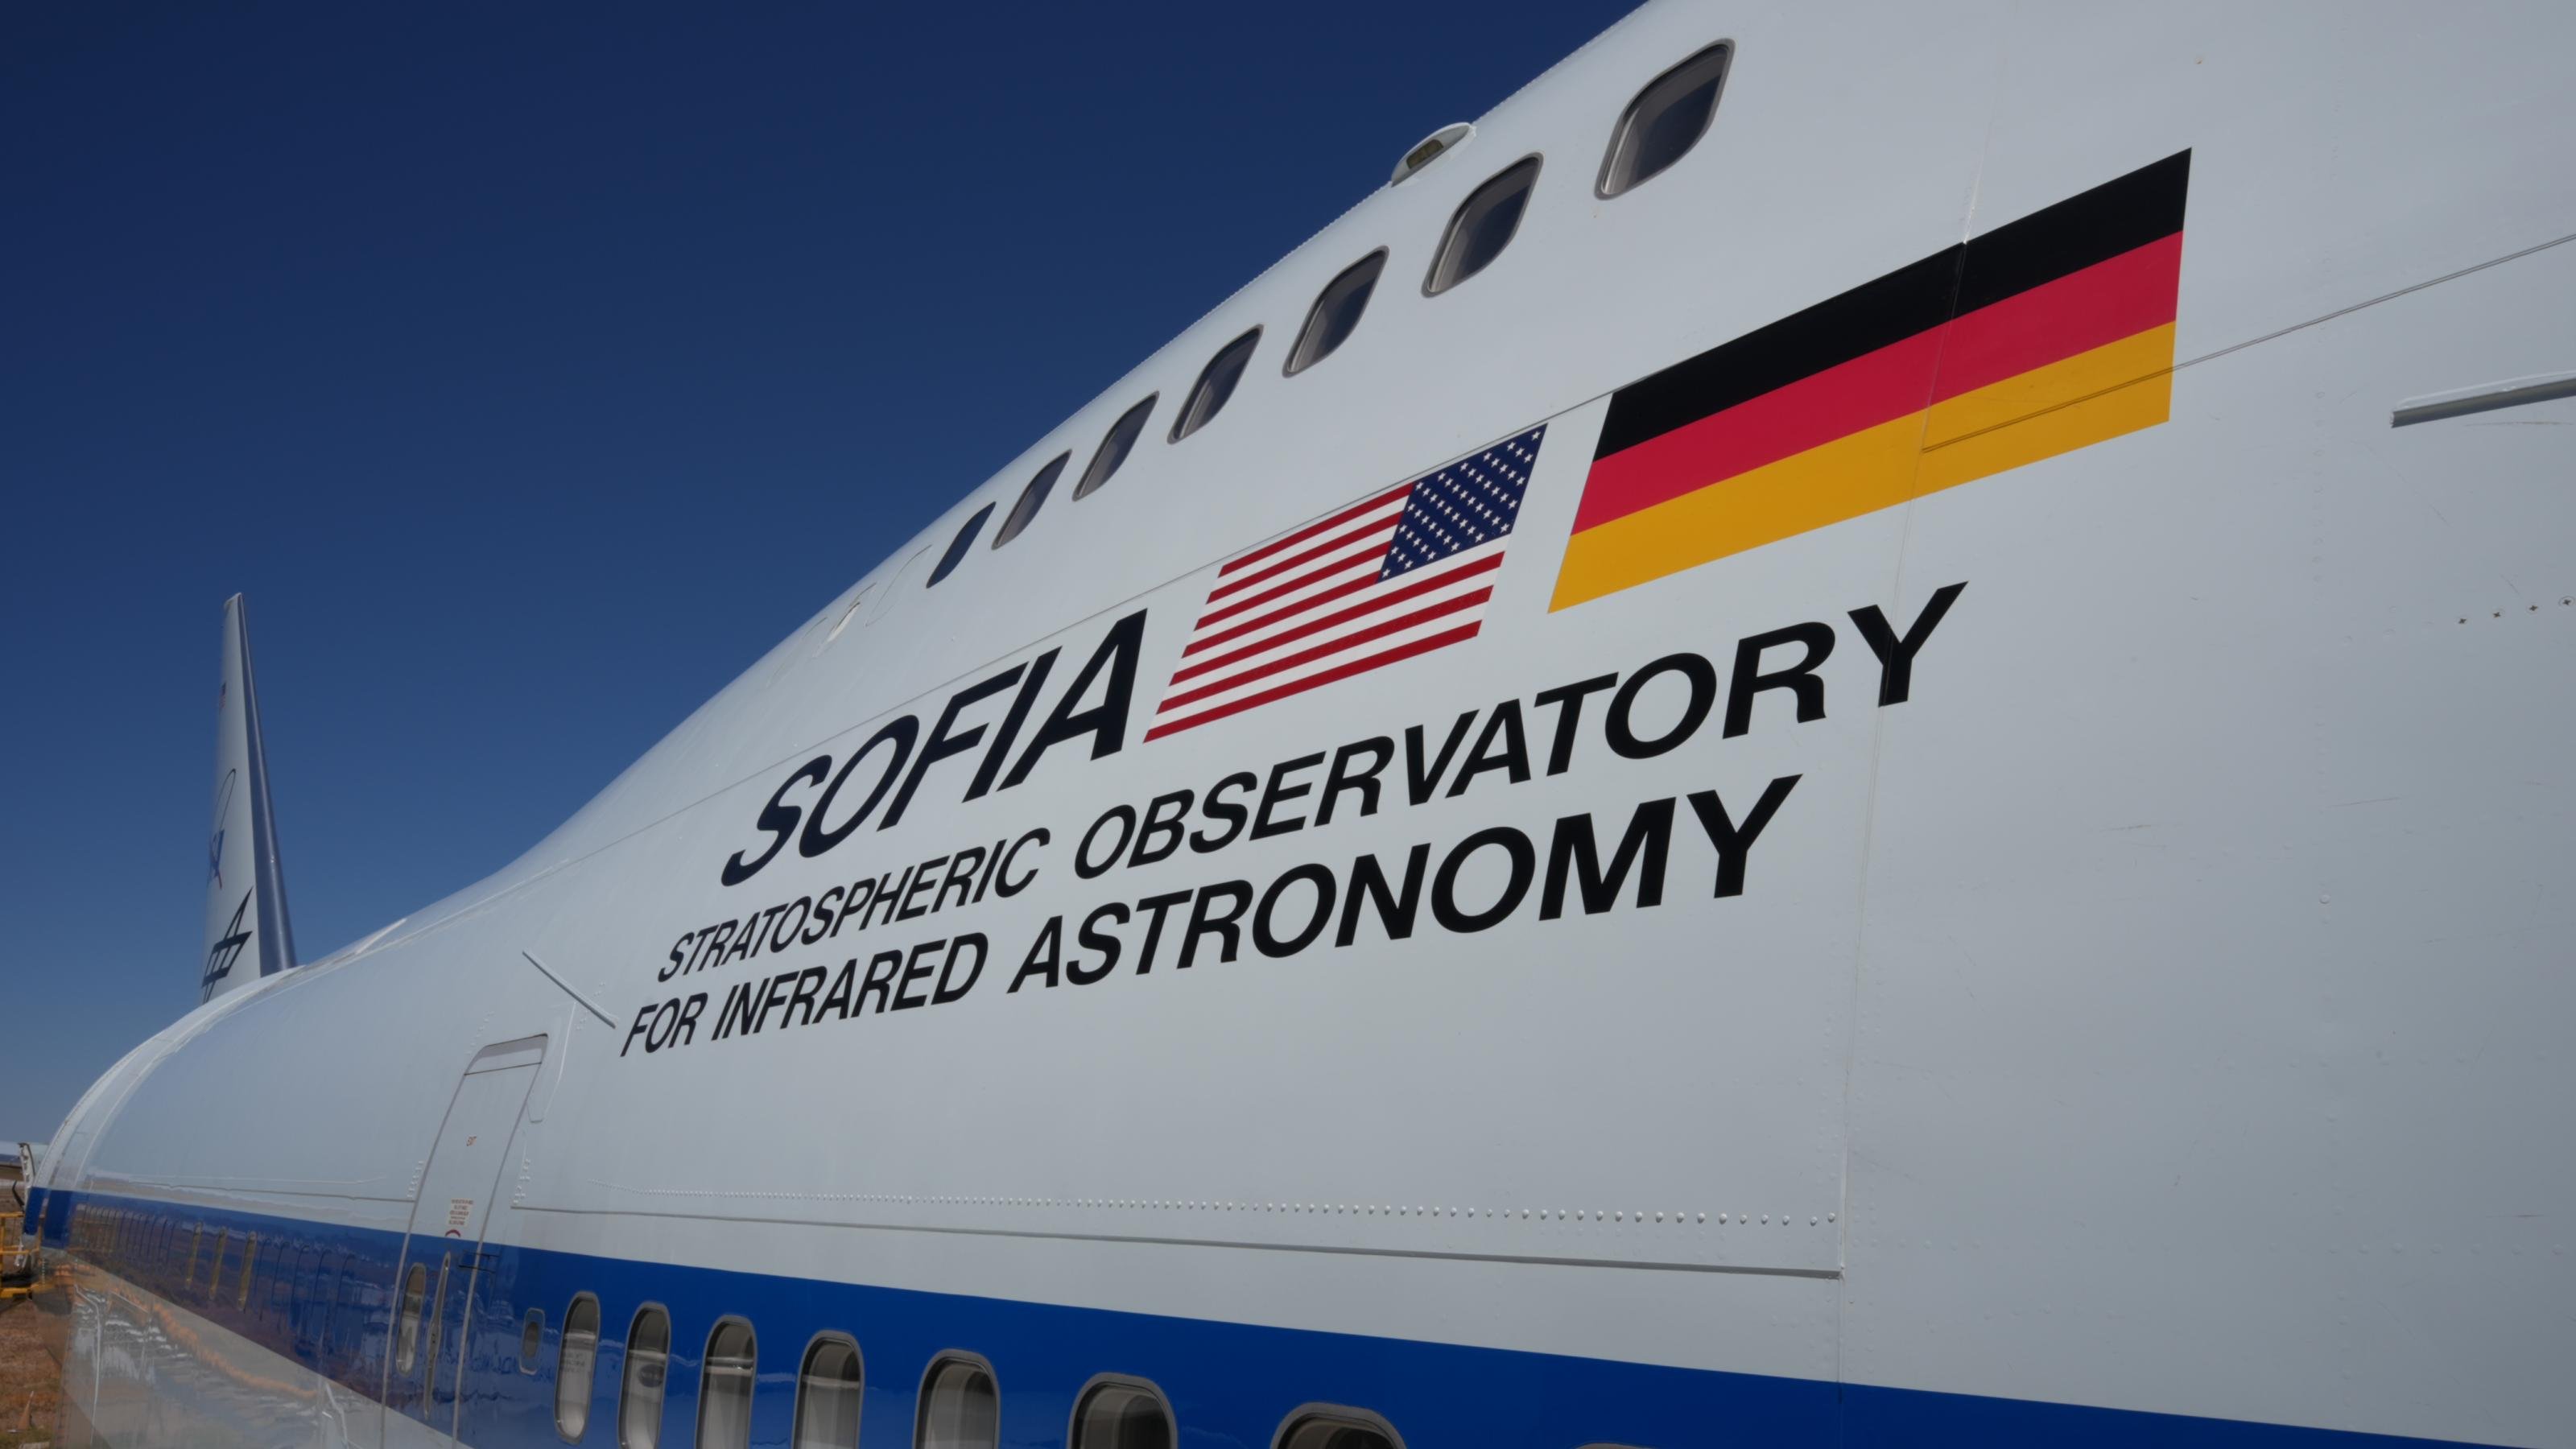 SOFIA, das fliegende Observatorium in einem umgebauten Jumbo-Jet steht zum Abflug bereit auf der Rollbahn. Neben dem Eingang sind die deutsche und die US-Flagge aufgeklebt sowie der Schriftzug: STRATOSPHERIC OBSERVATORY FOR INFRARED ASTRONOMY.